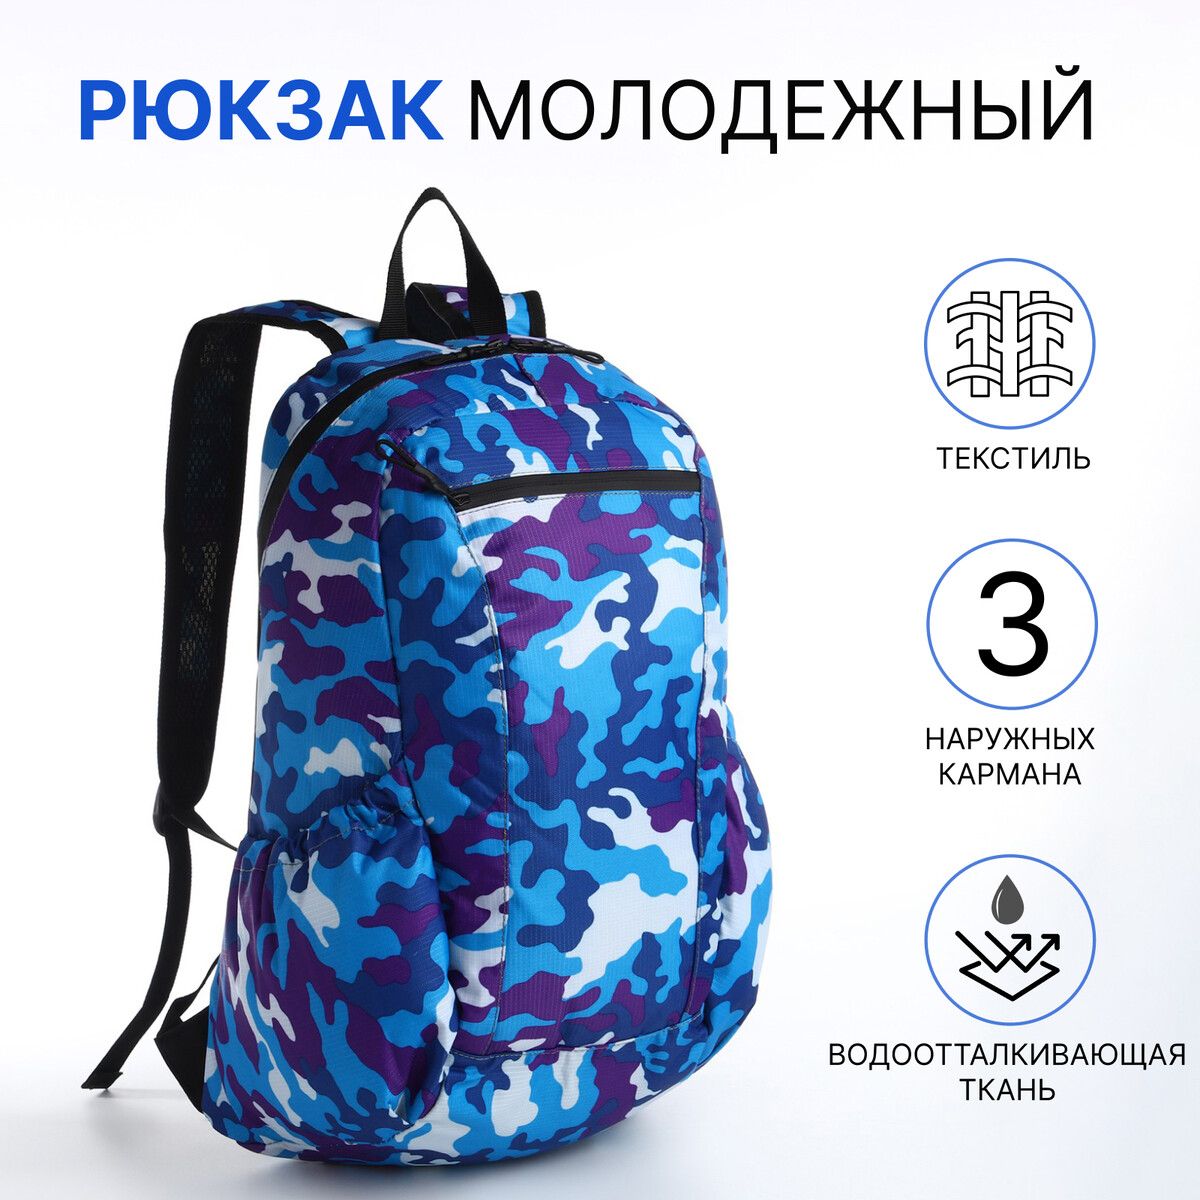 Рюкзак молодежный, водонепроницаемый на молнии, 3 кармана, цвет синий рюкзак молодежный из текстиля на молнии водонепроницаемый наружный карман бирюзовый